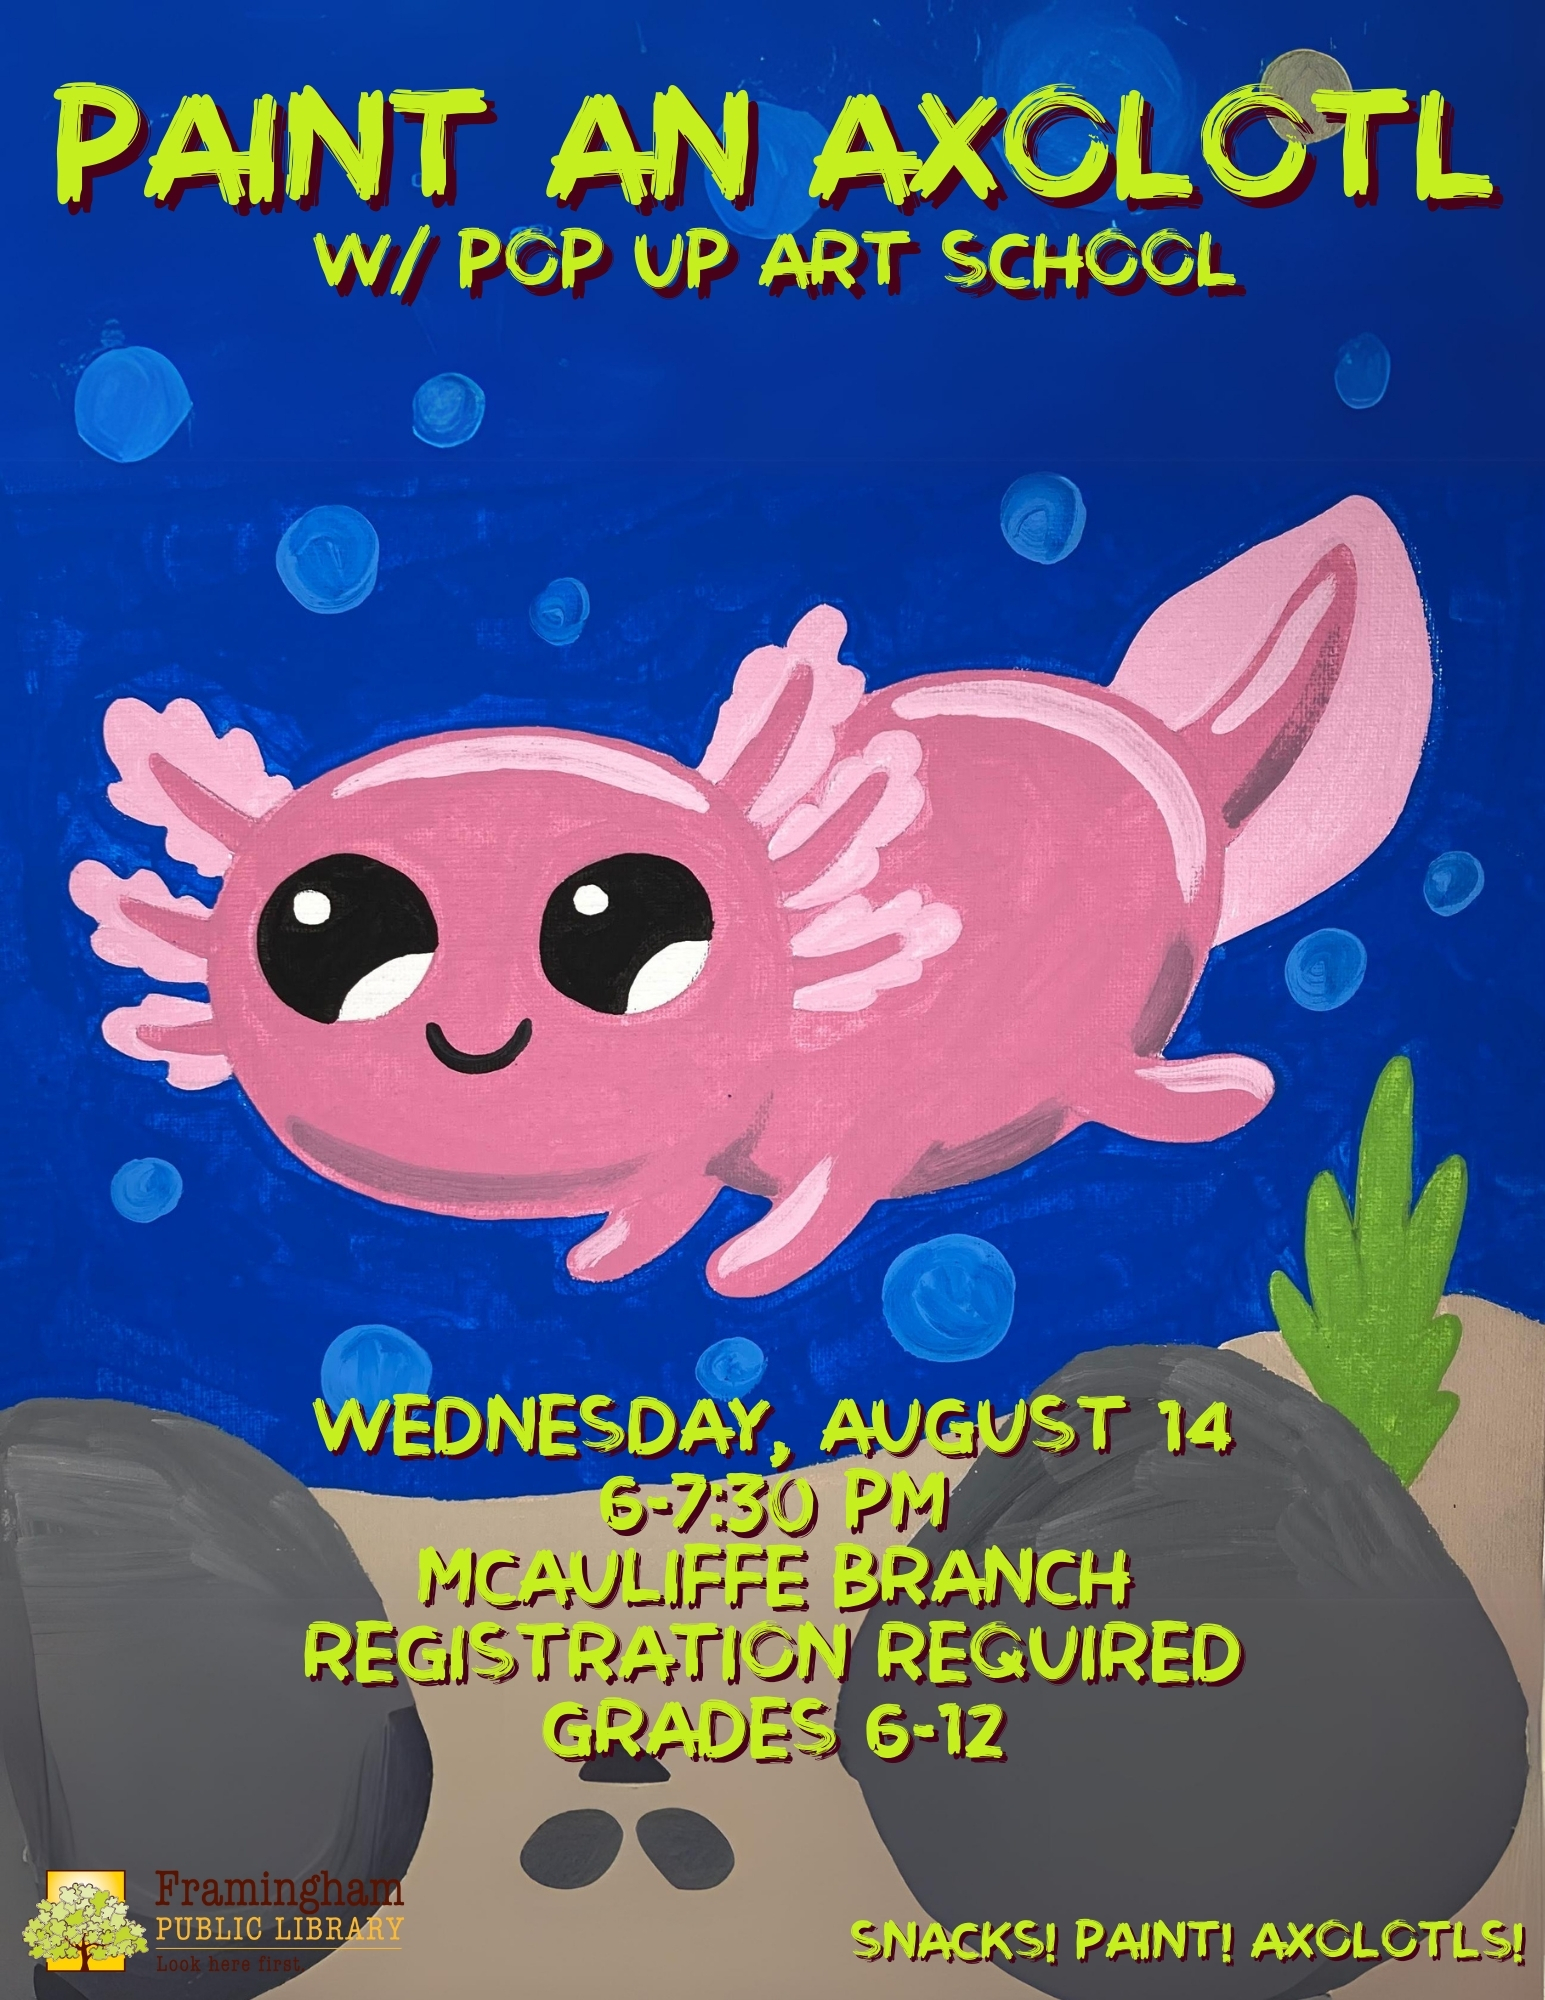 Axolotl Paint Party w/ Pop Up Art School thumbnail Photo